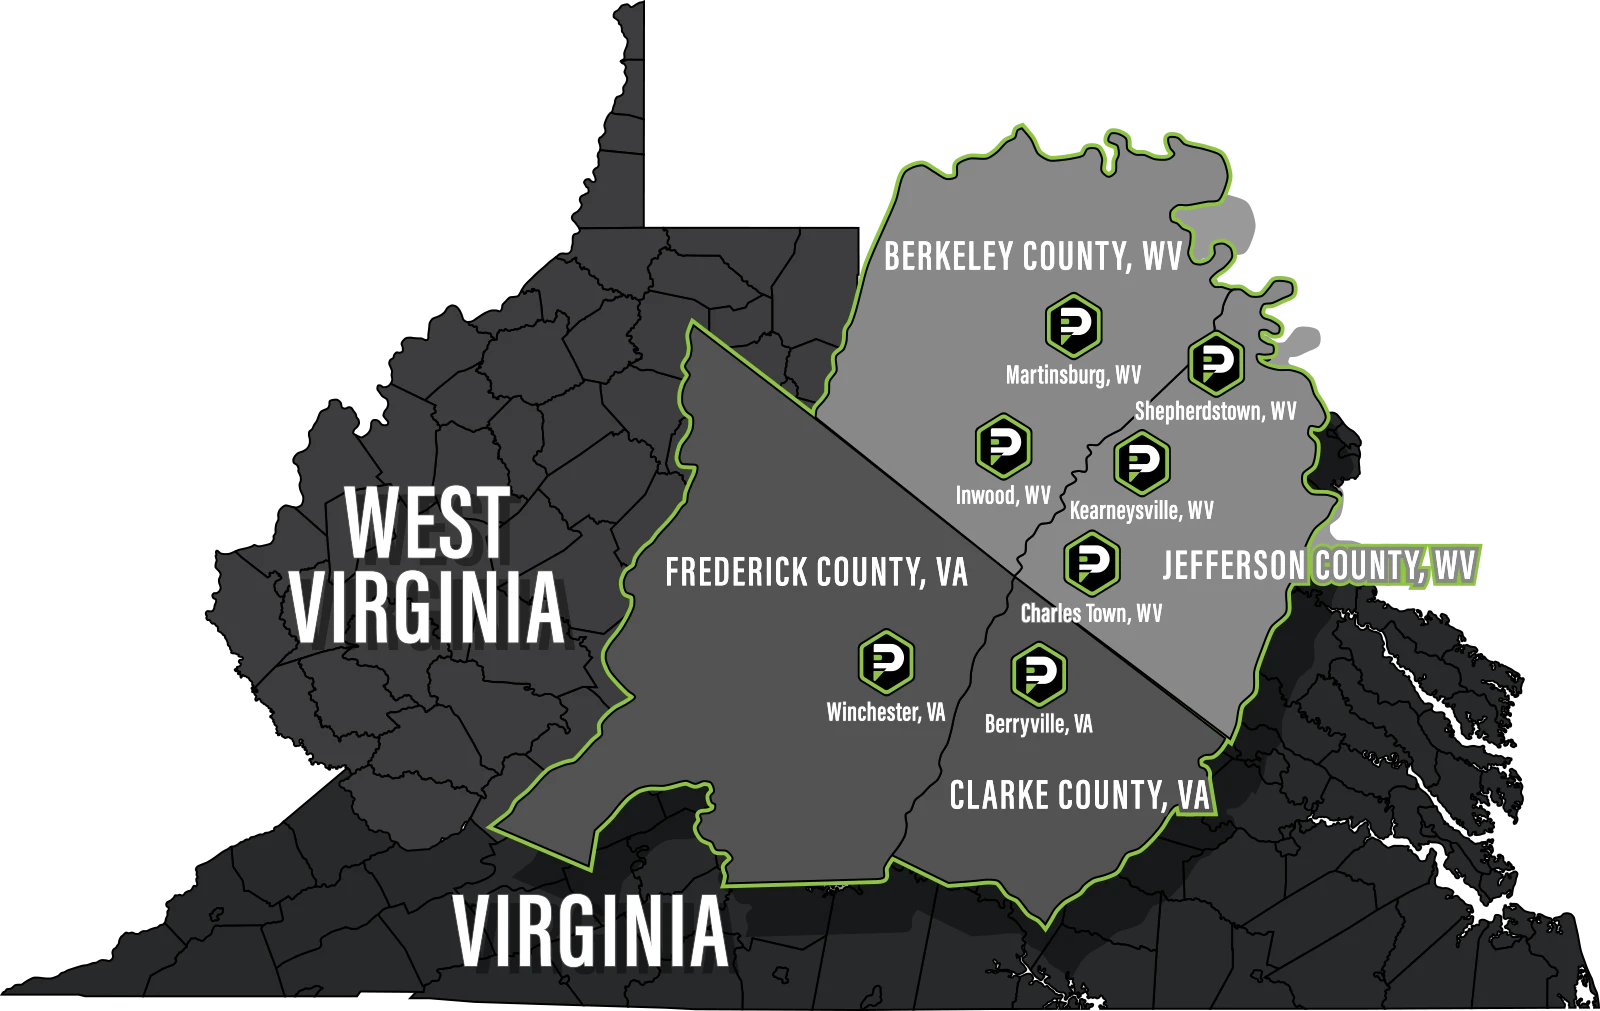 Petti Pest Control Service Area Map West Virginia and Virginia